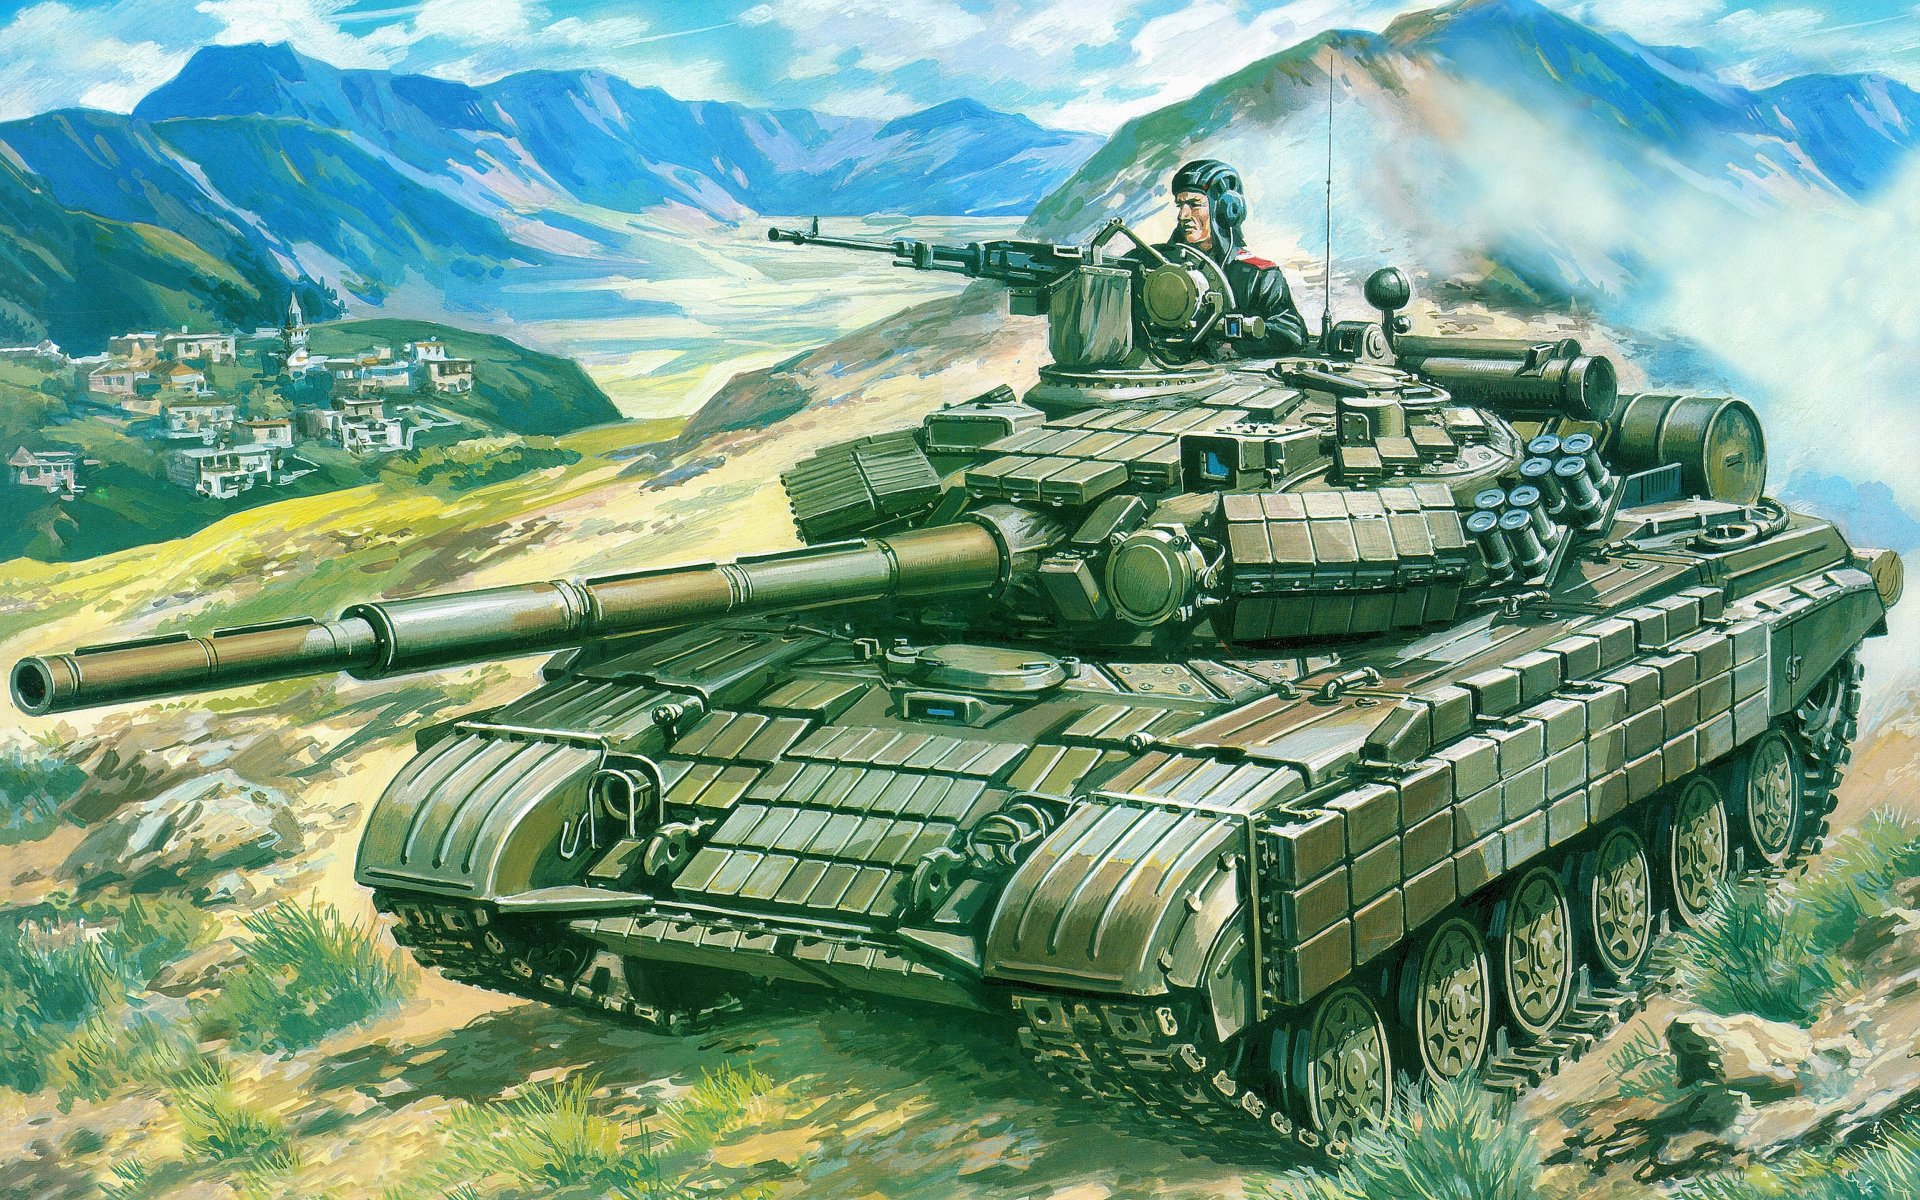 l full size military tanks